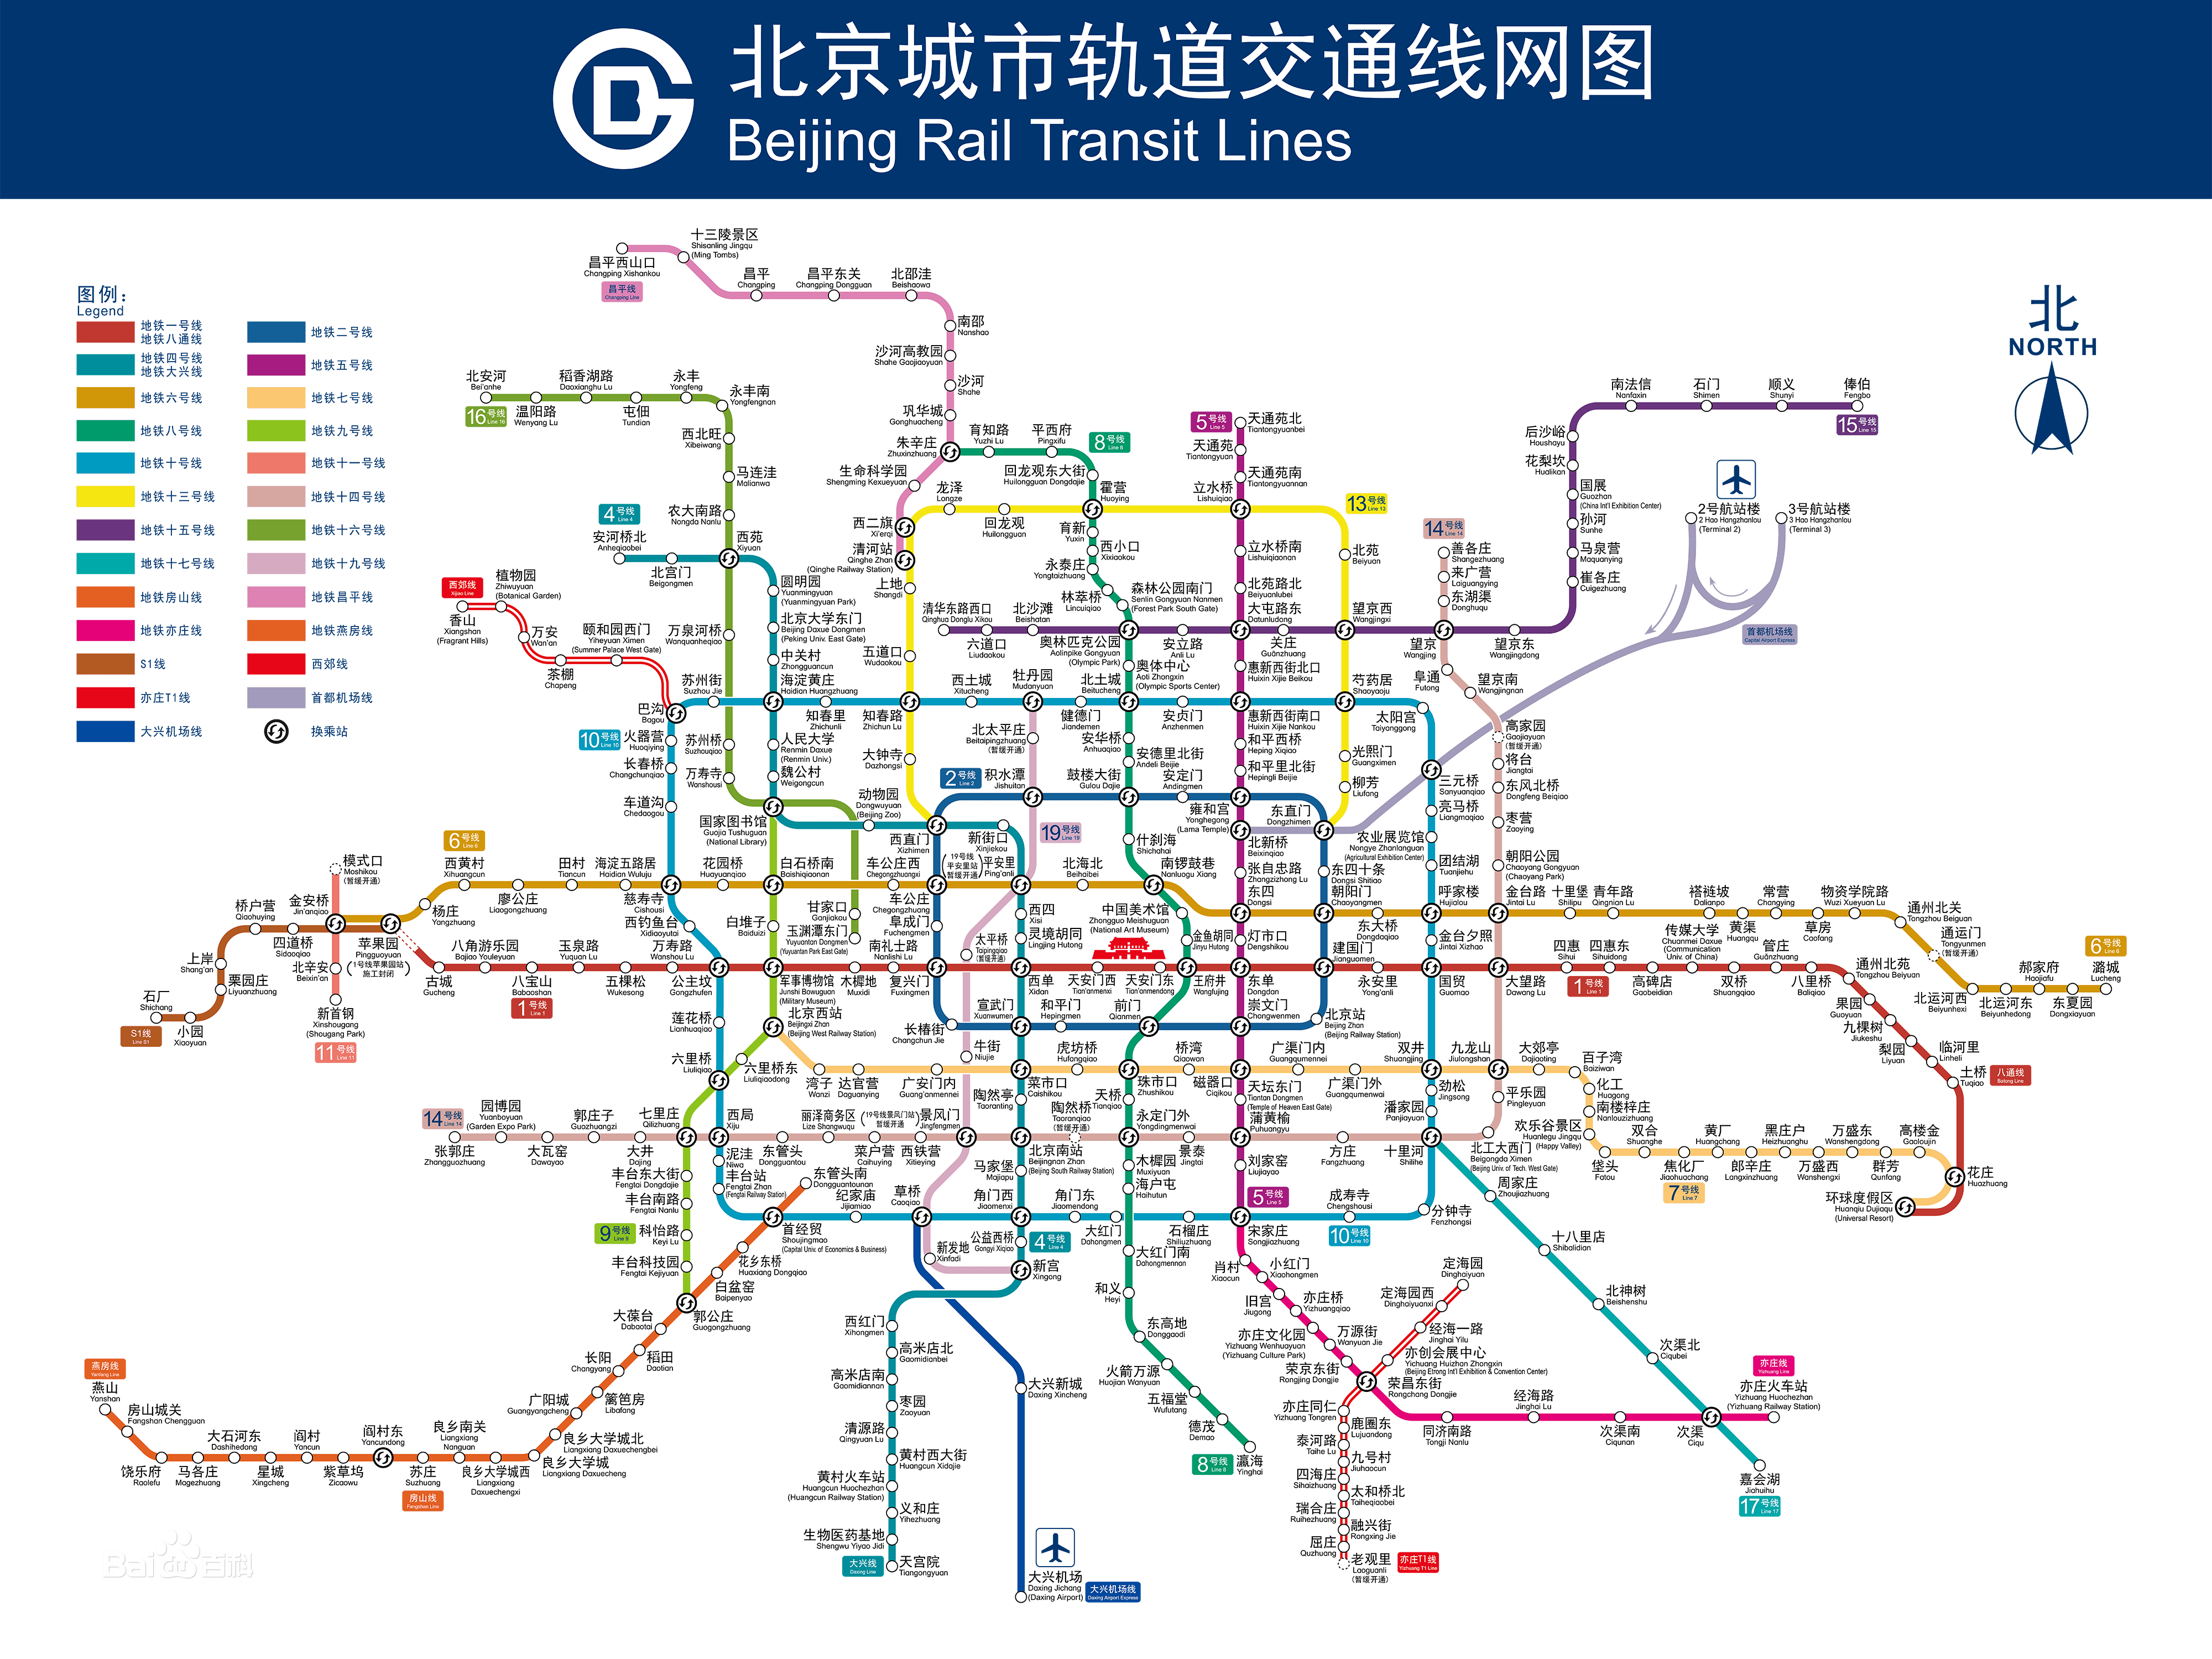 在2021年底,北京开通了9条(段)地铁线路